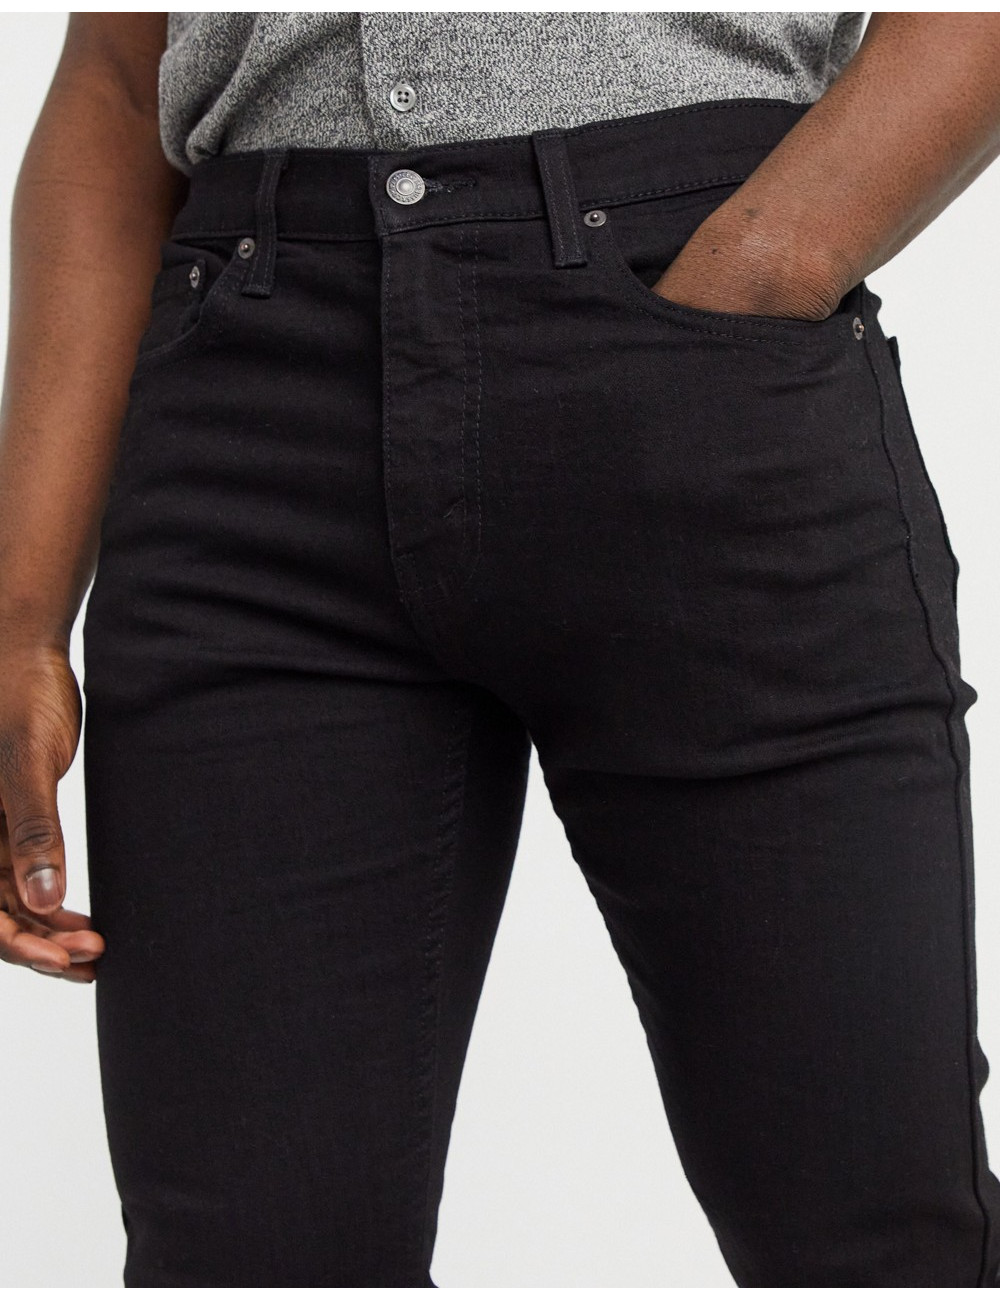 Levi's 512 slim jeans in black